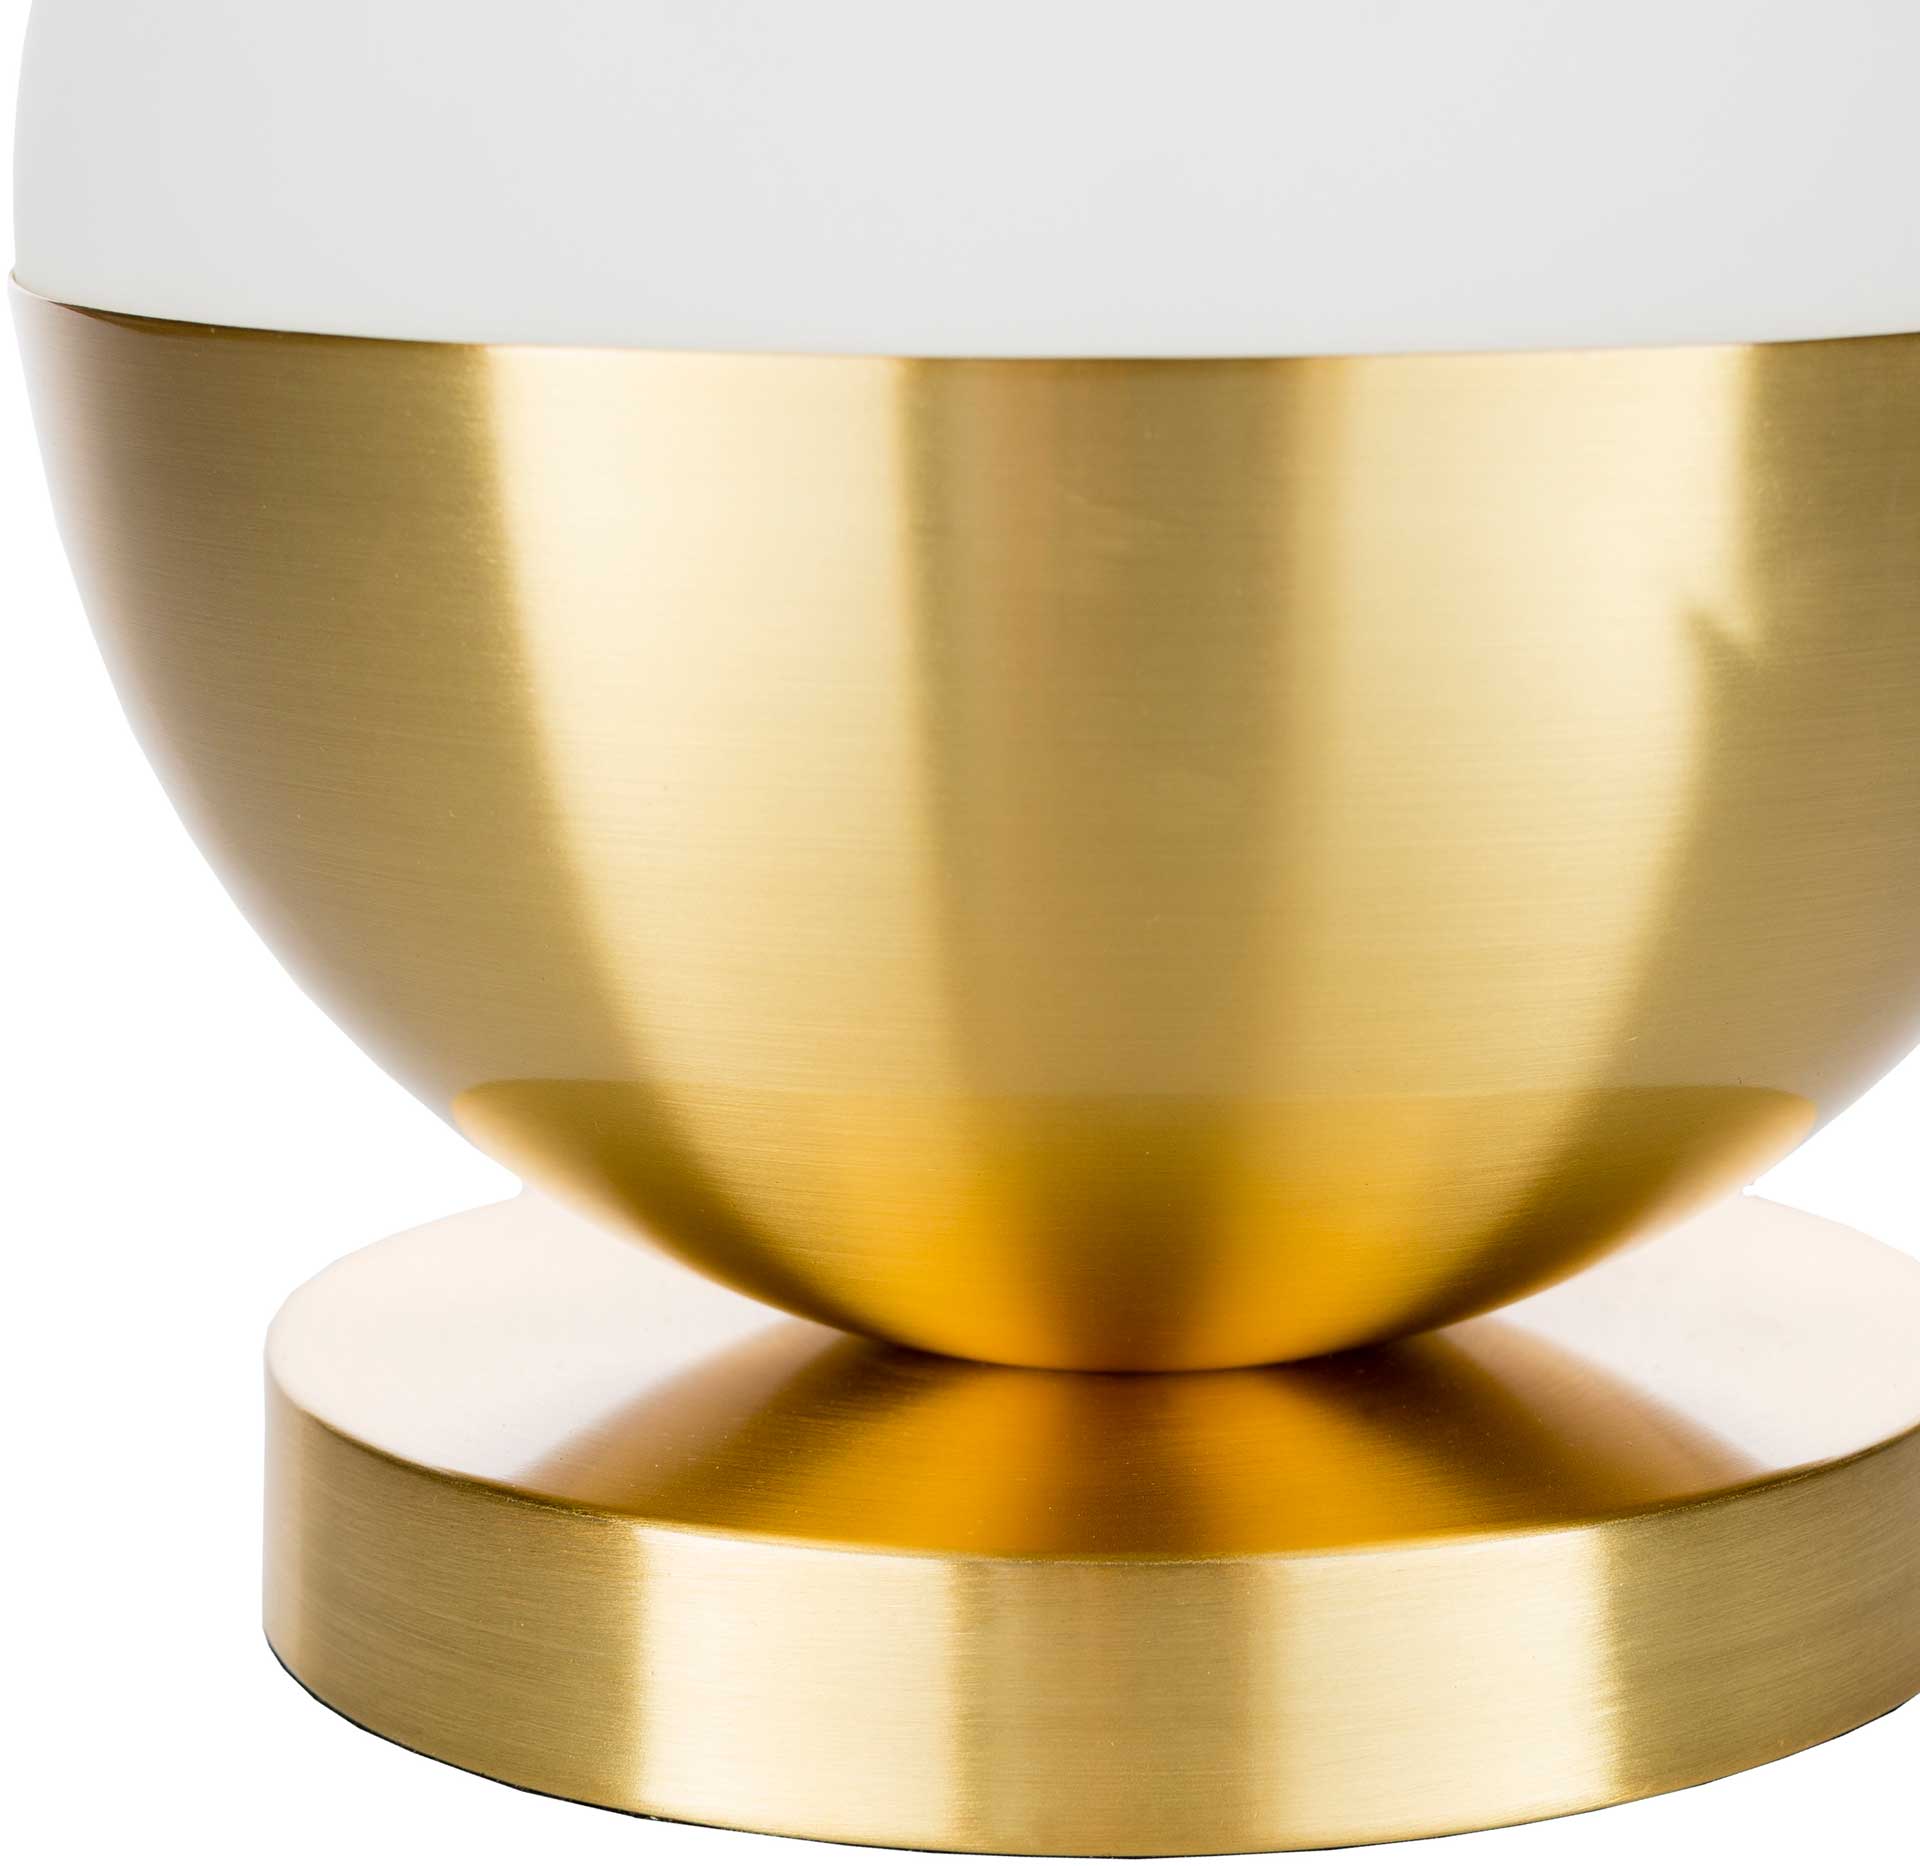 Alexander Table Lamp White/Brass